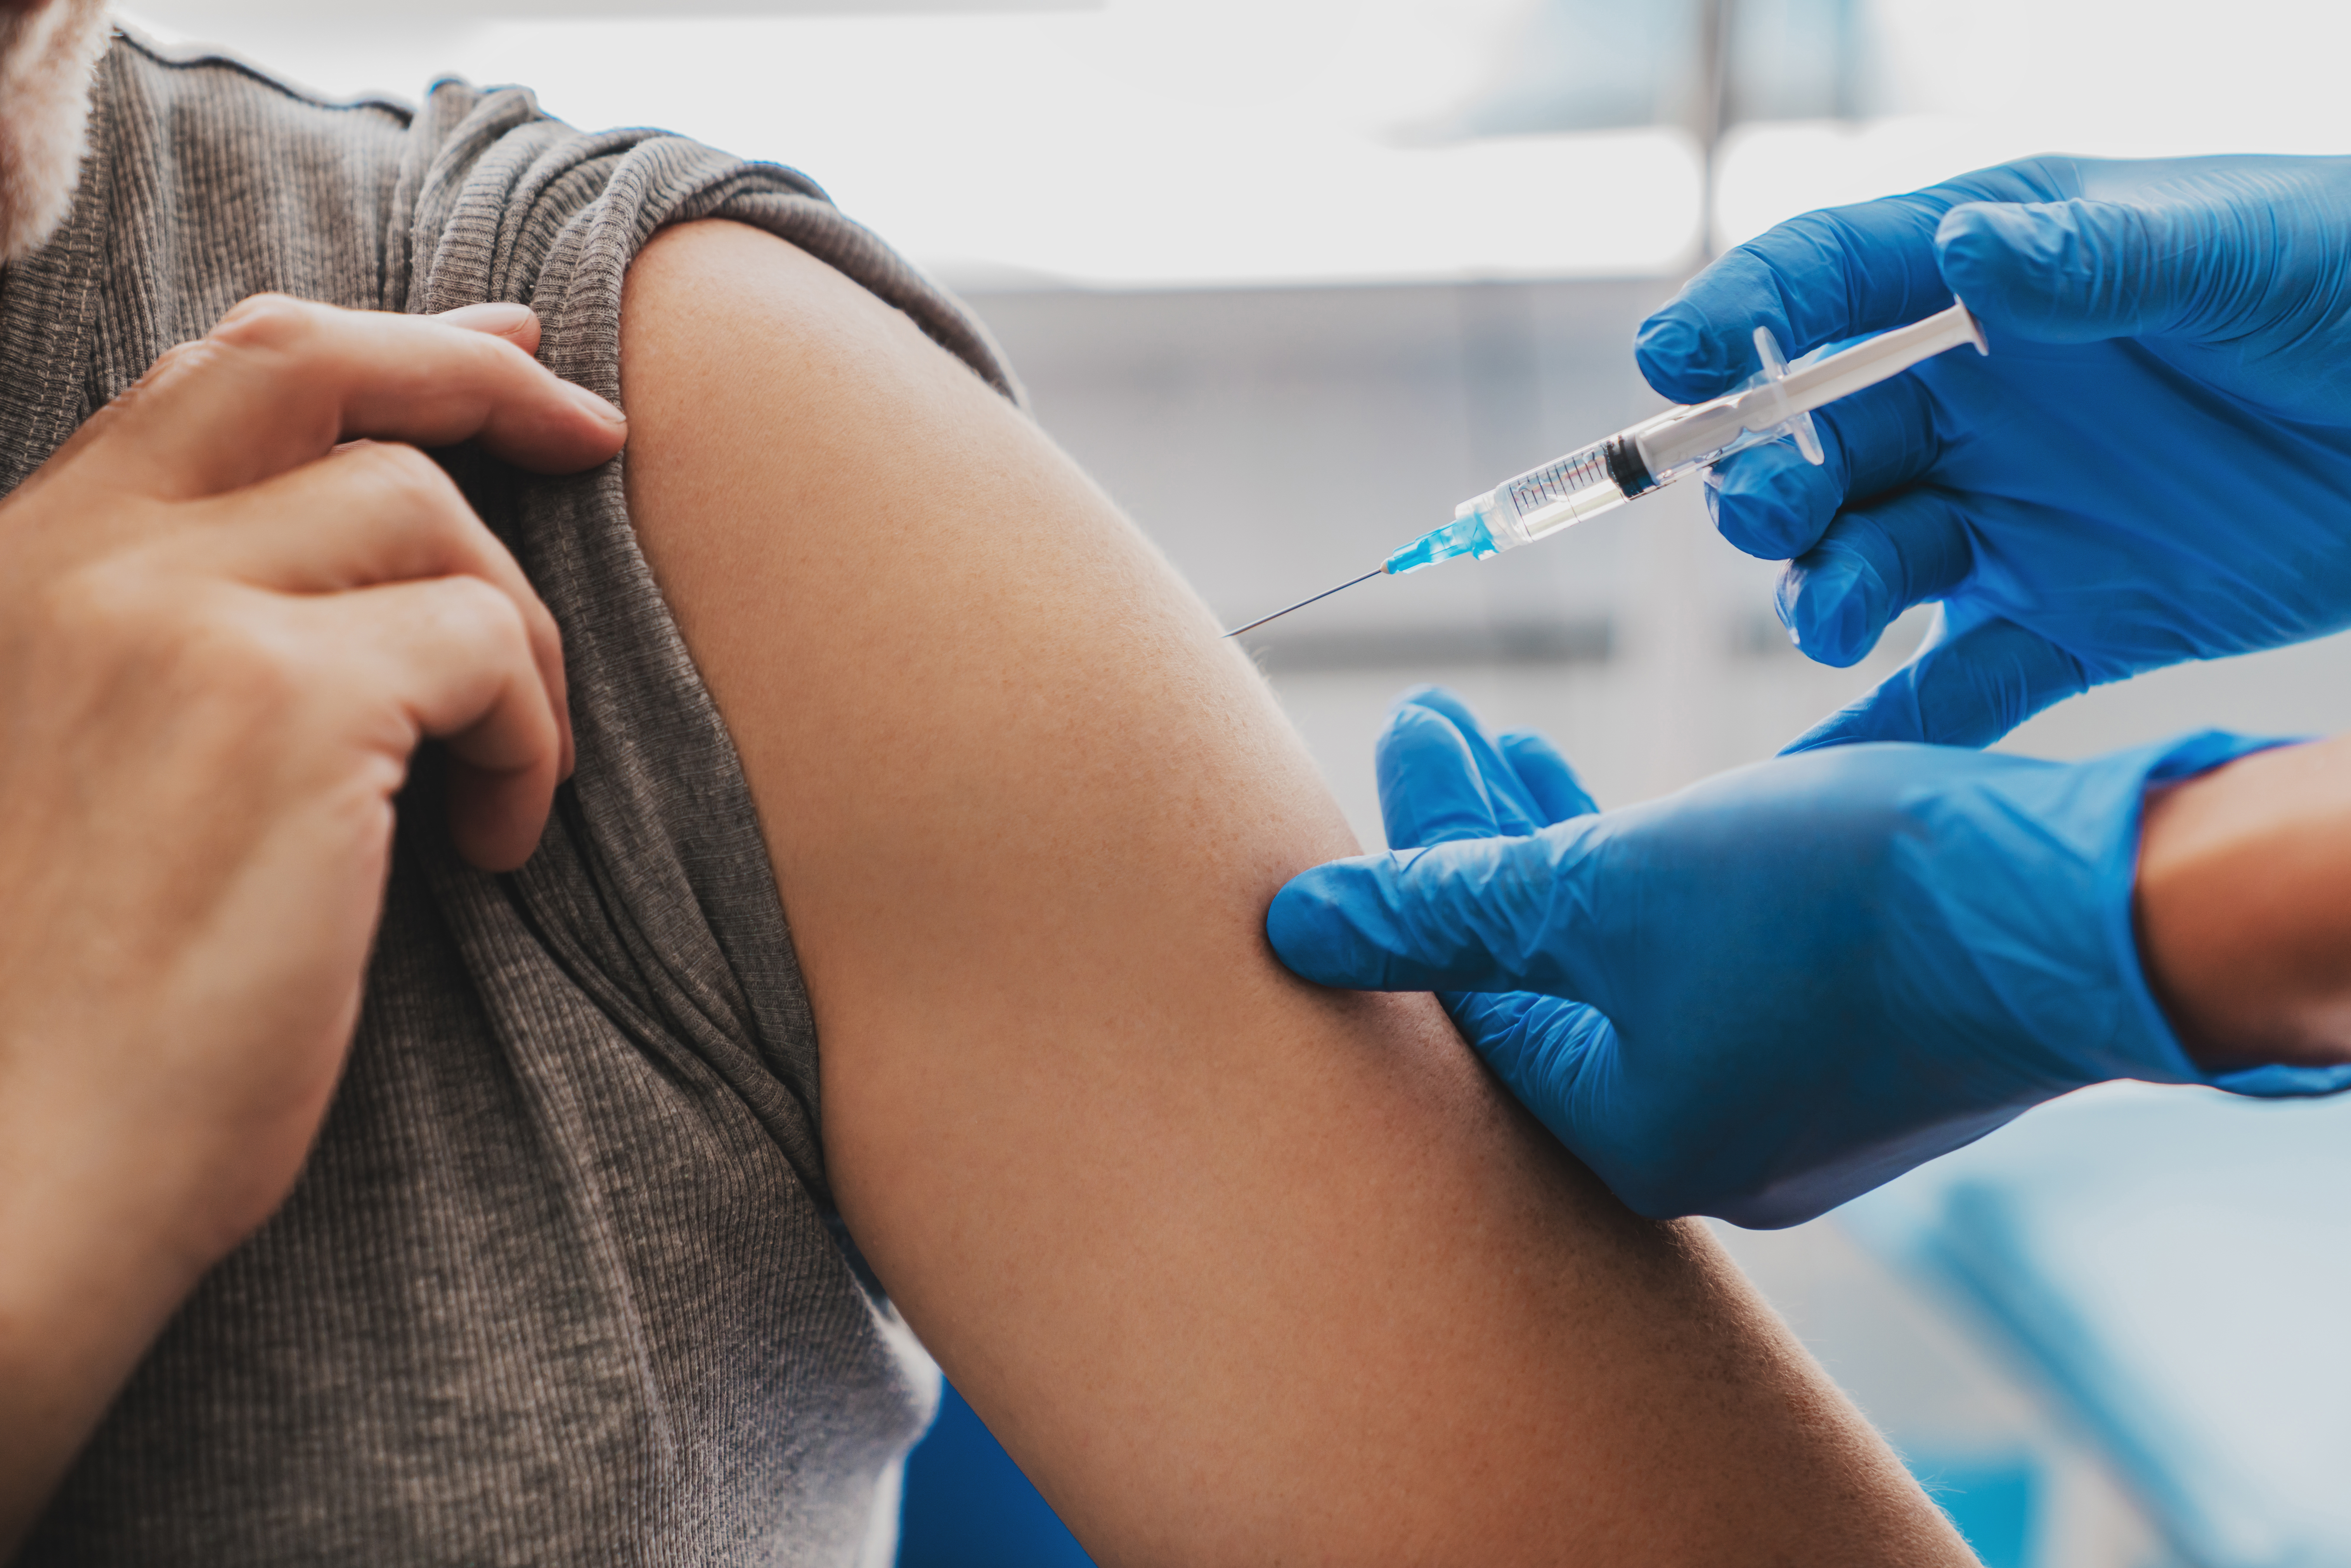 Grippe-Impfung in der Apotheke: Eine Nadel im Arm des Patienten